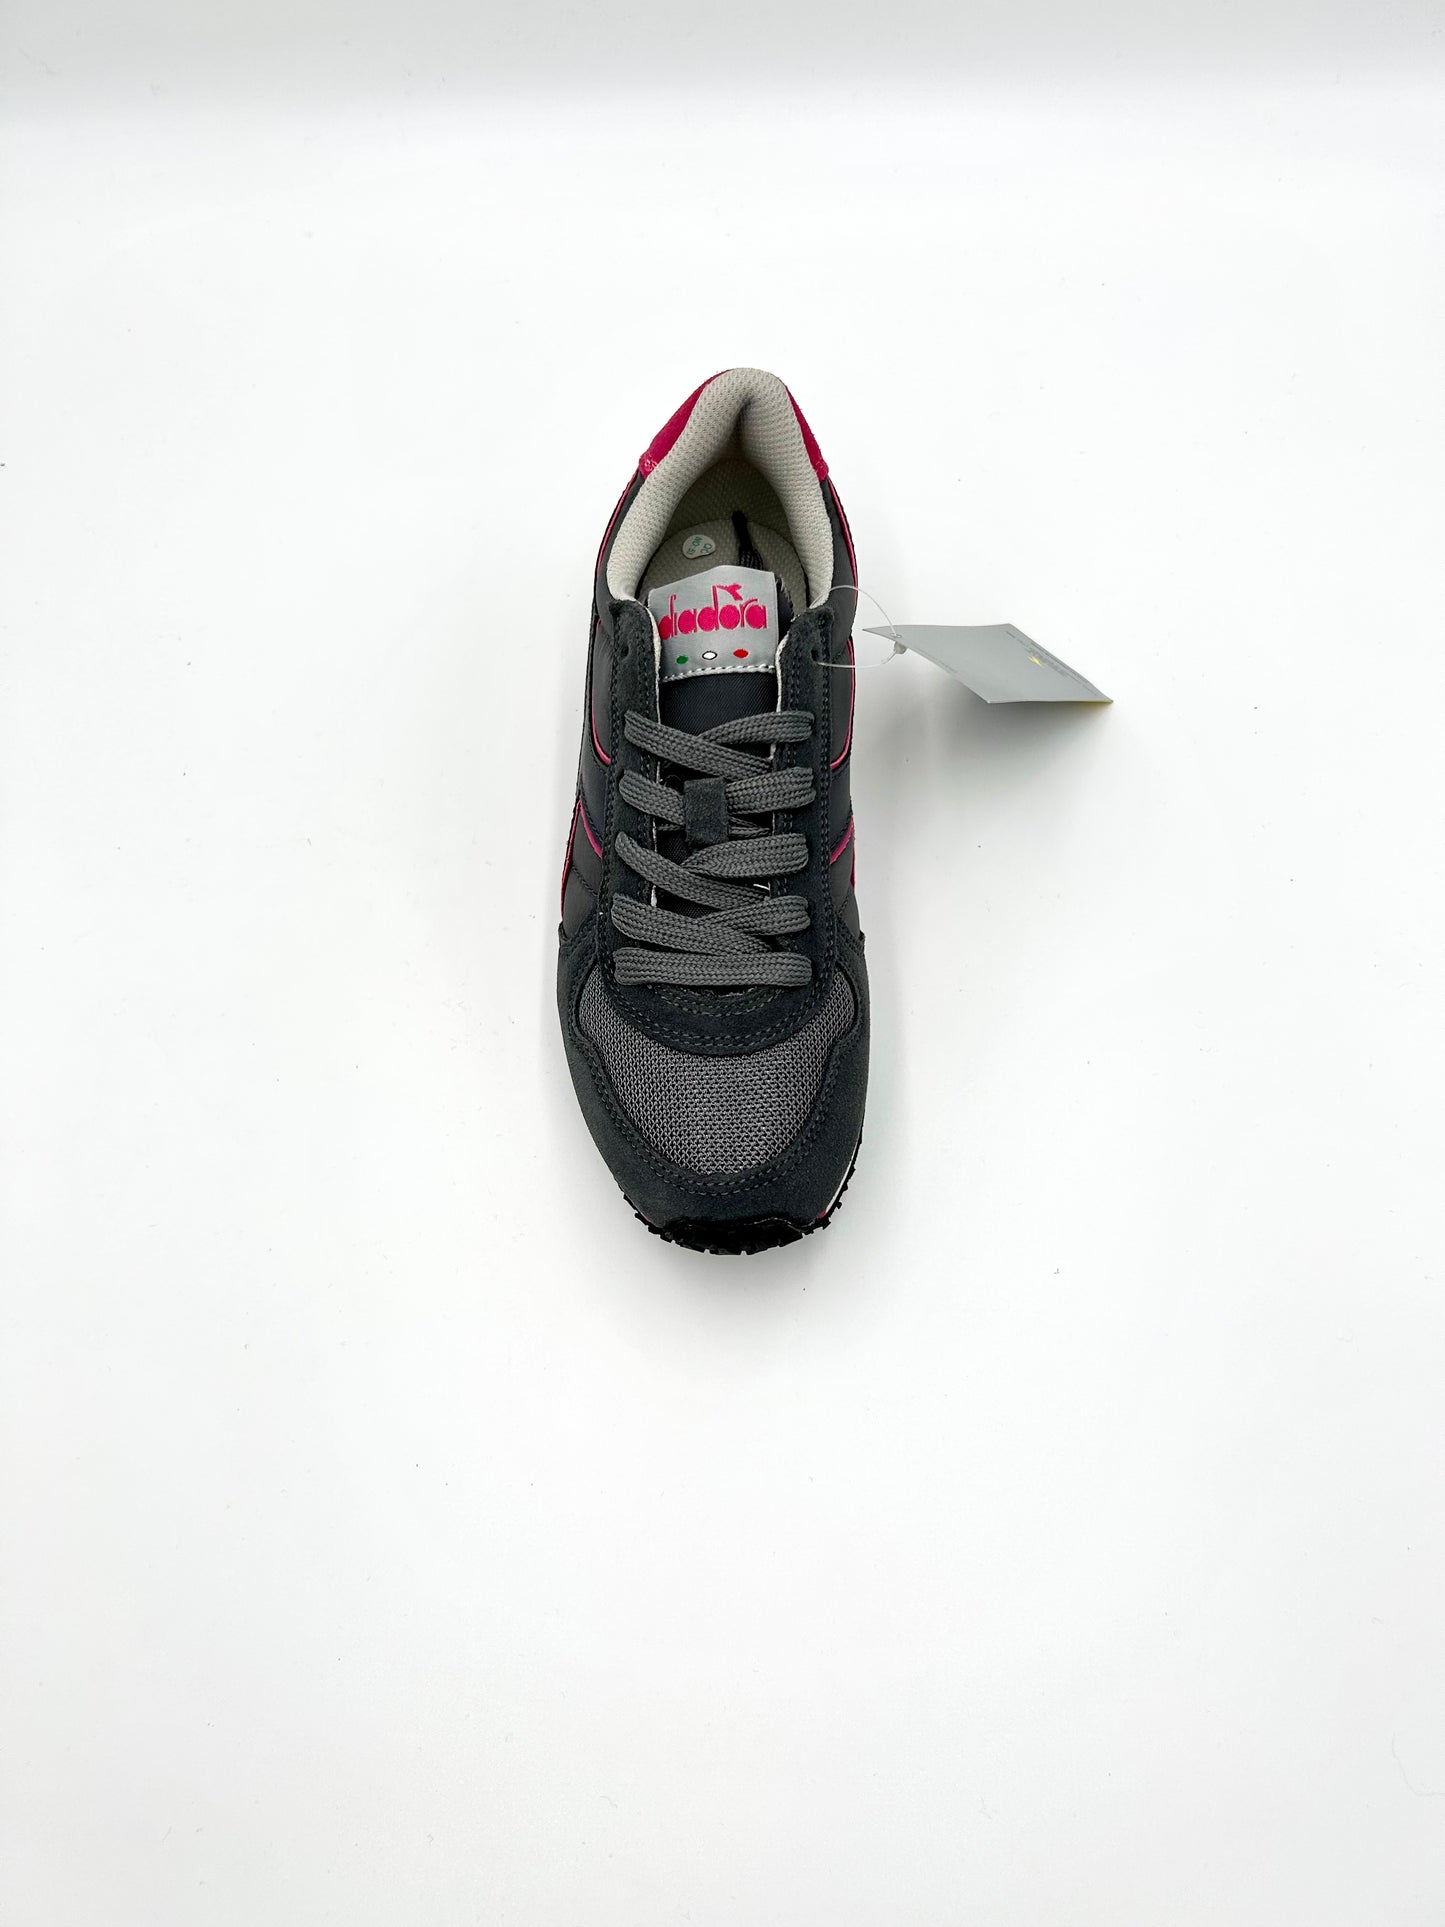 Diadora Sneakers K-run C - grey and fuxia - Diadora